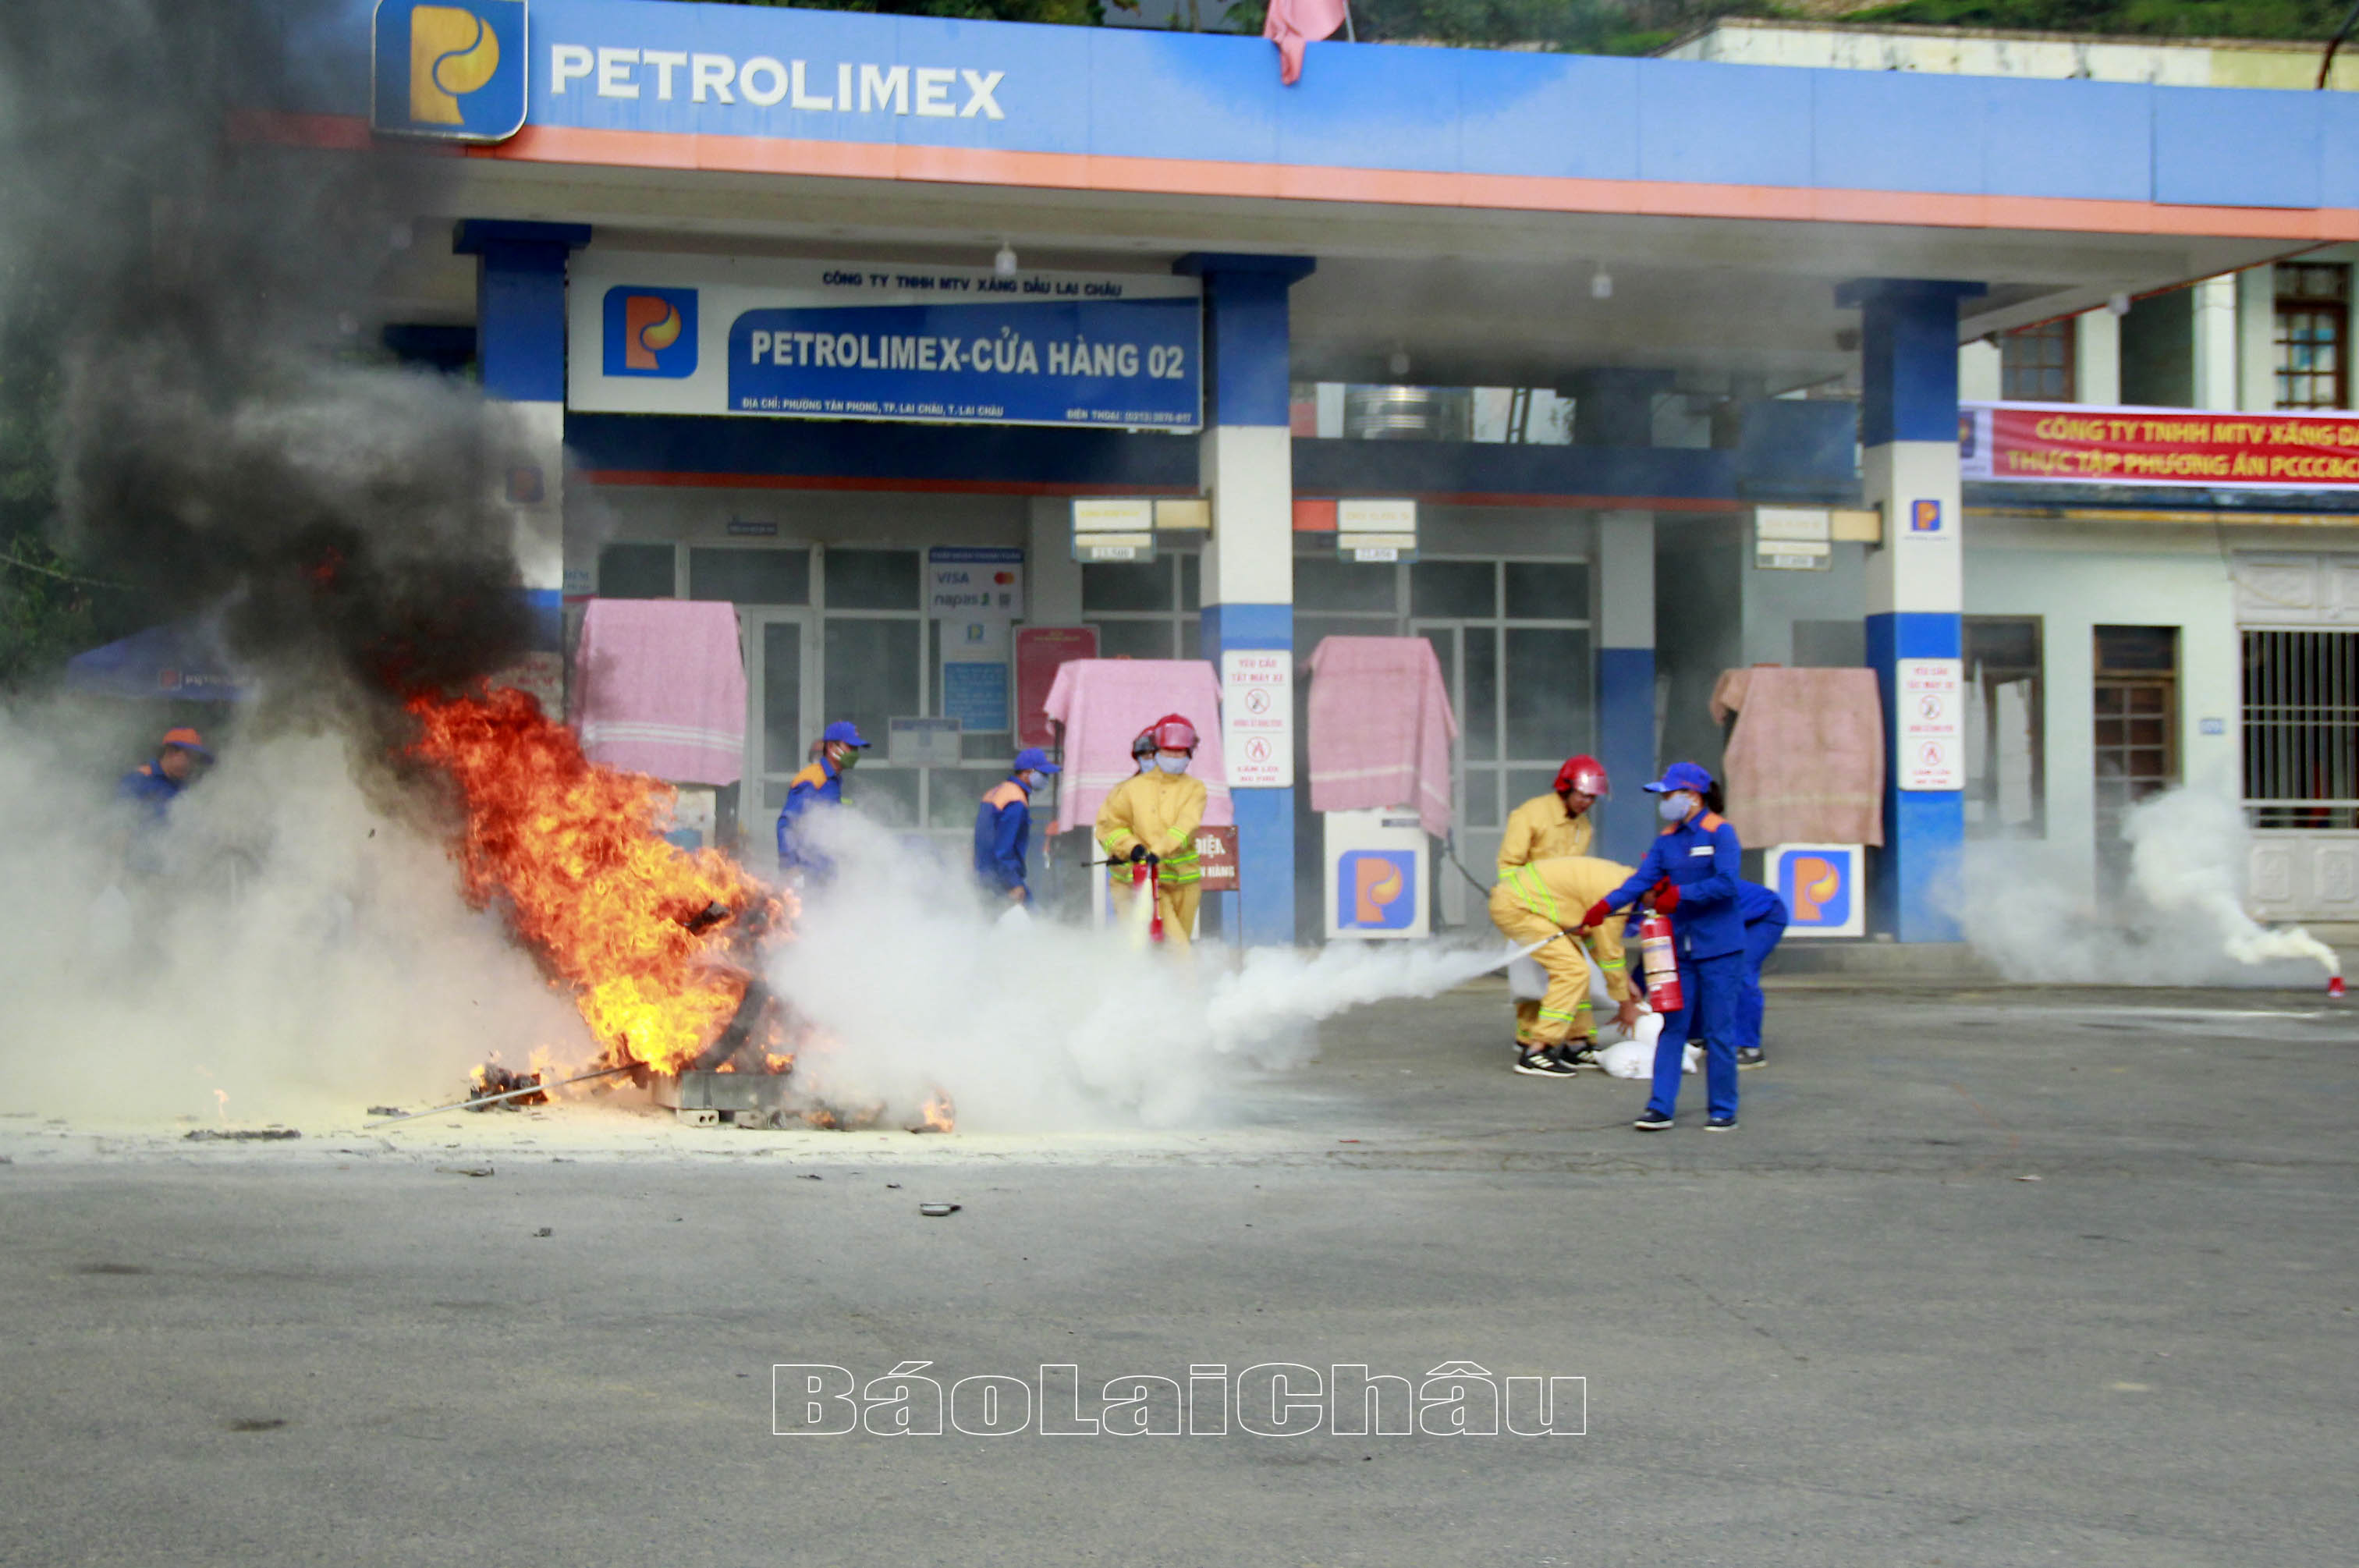 Cán bộ, nhân viên cửa hàng xăng dầu thực tập chữa cháy với tình huống giả định có cháy xảy ra. 